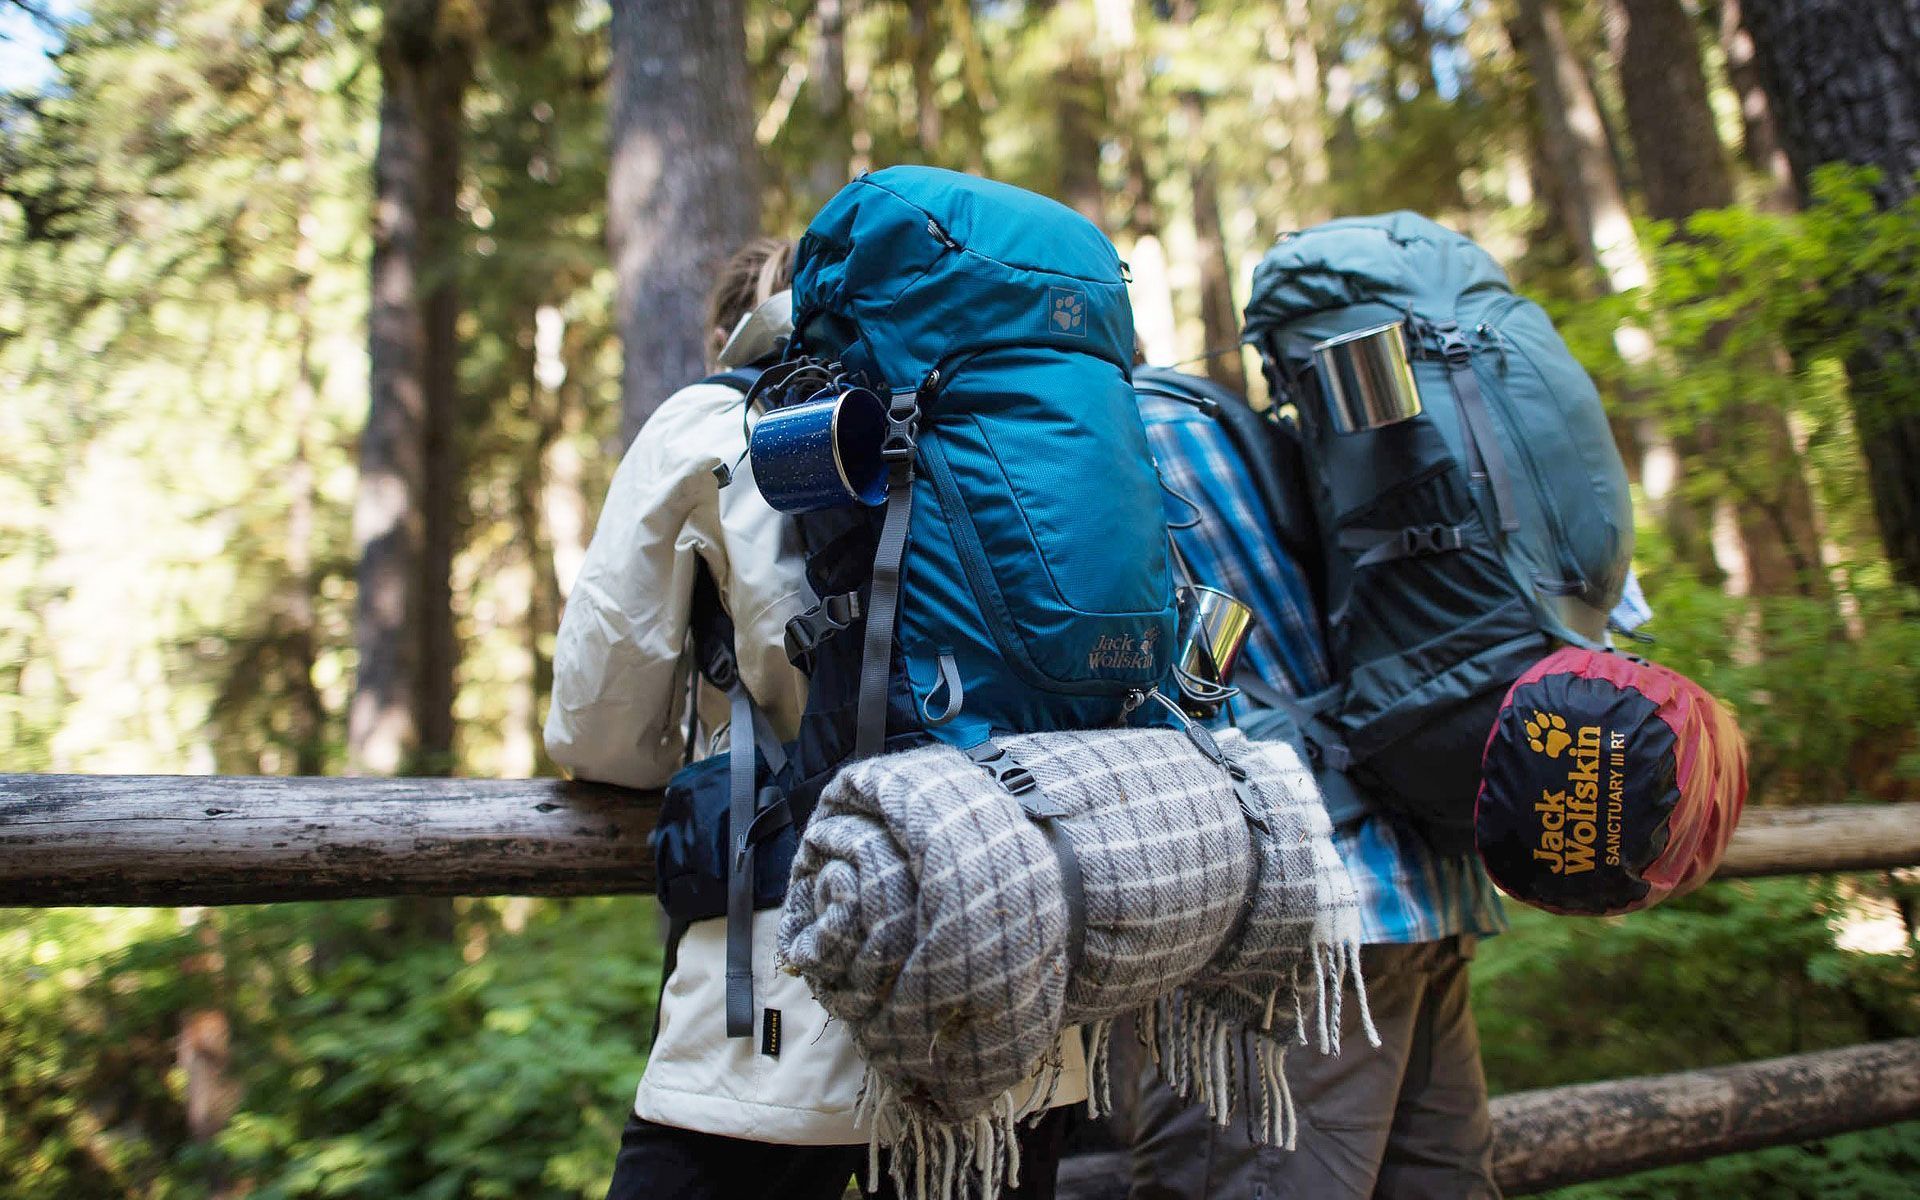 Achetez nos accessoires de camping - Matériel de randonnée